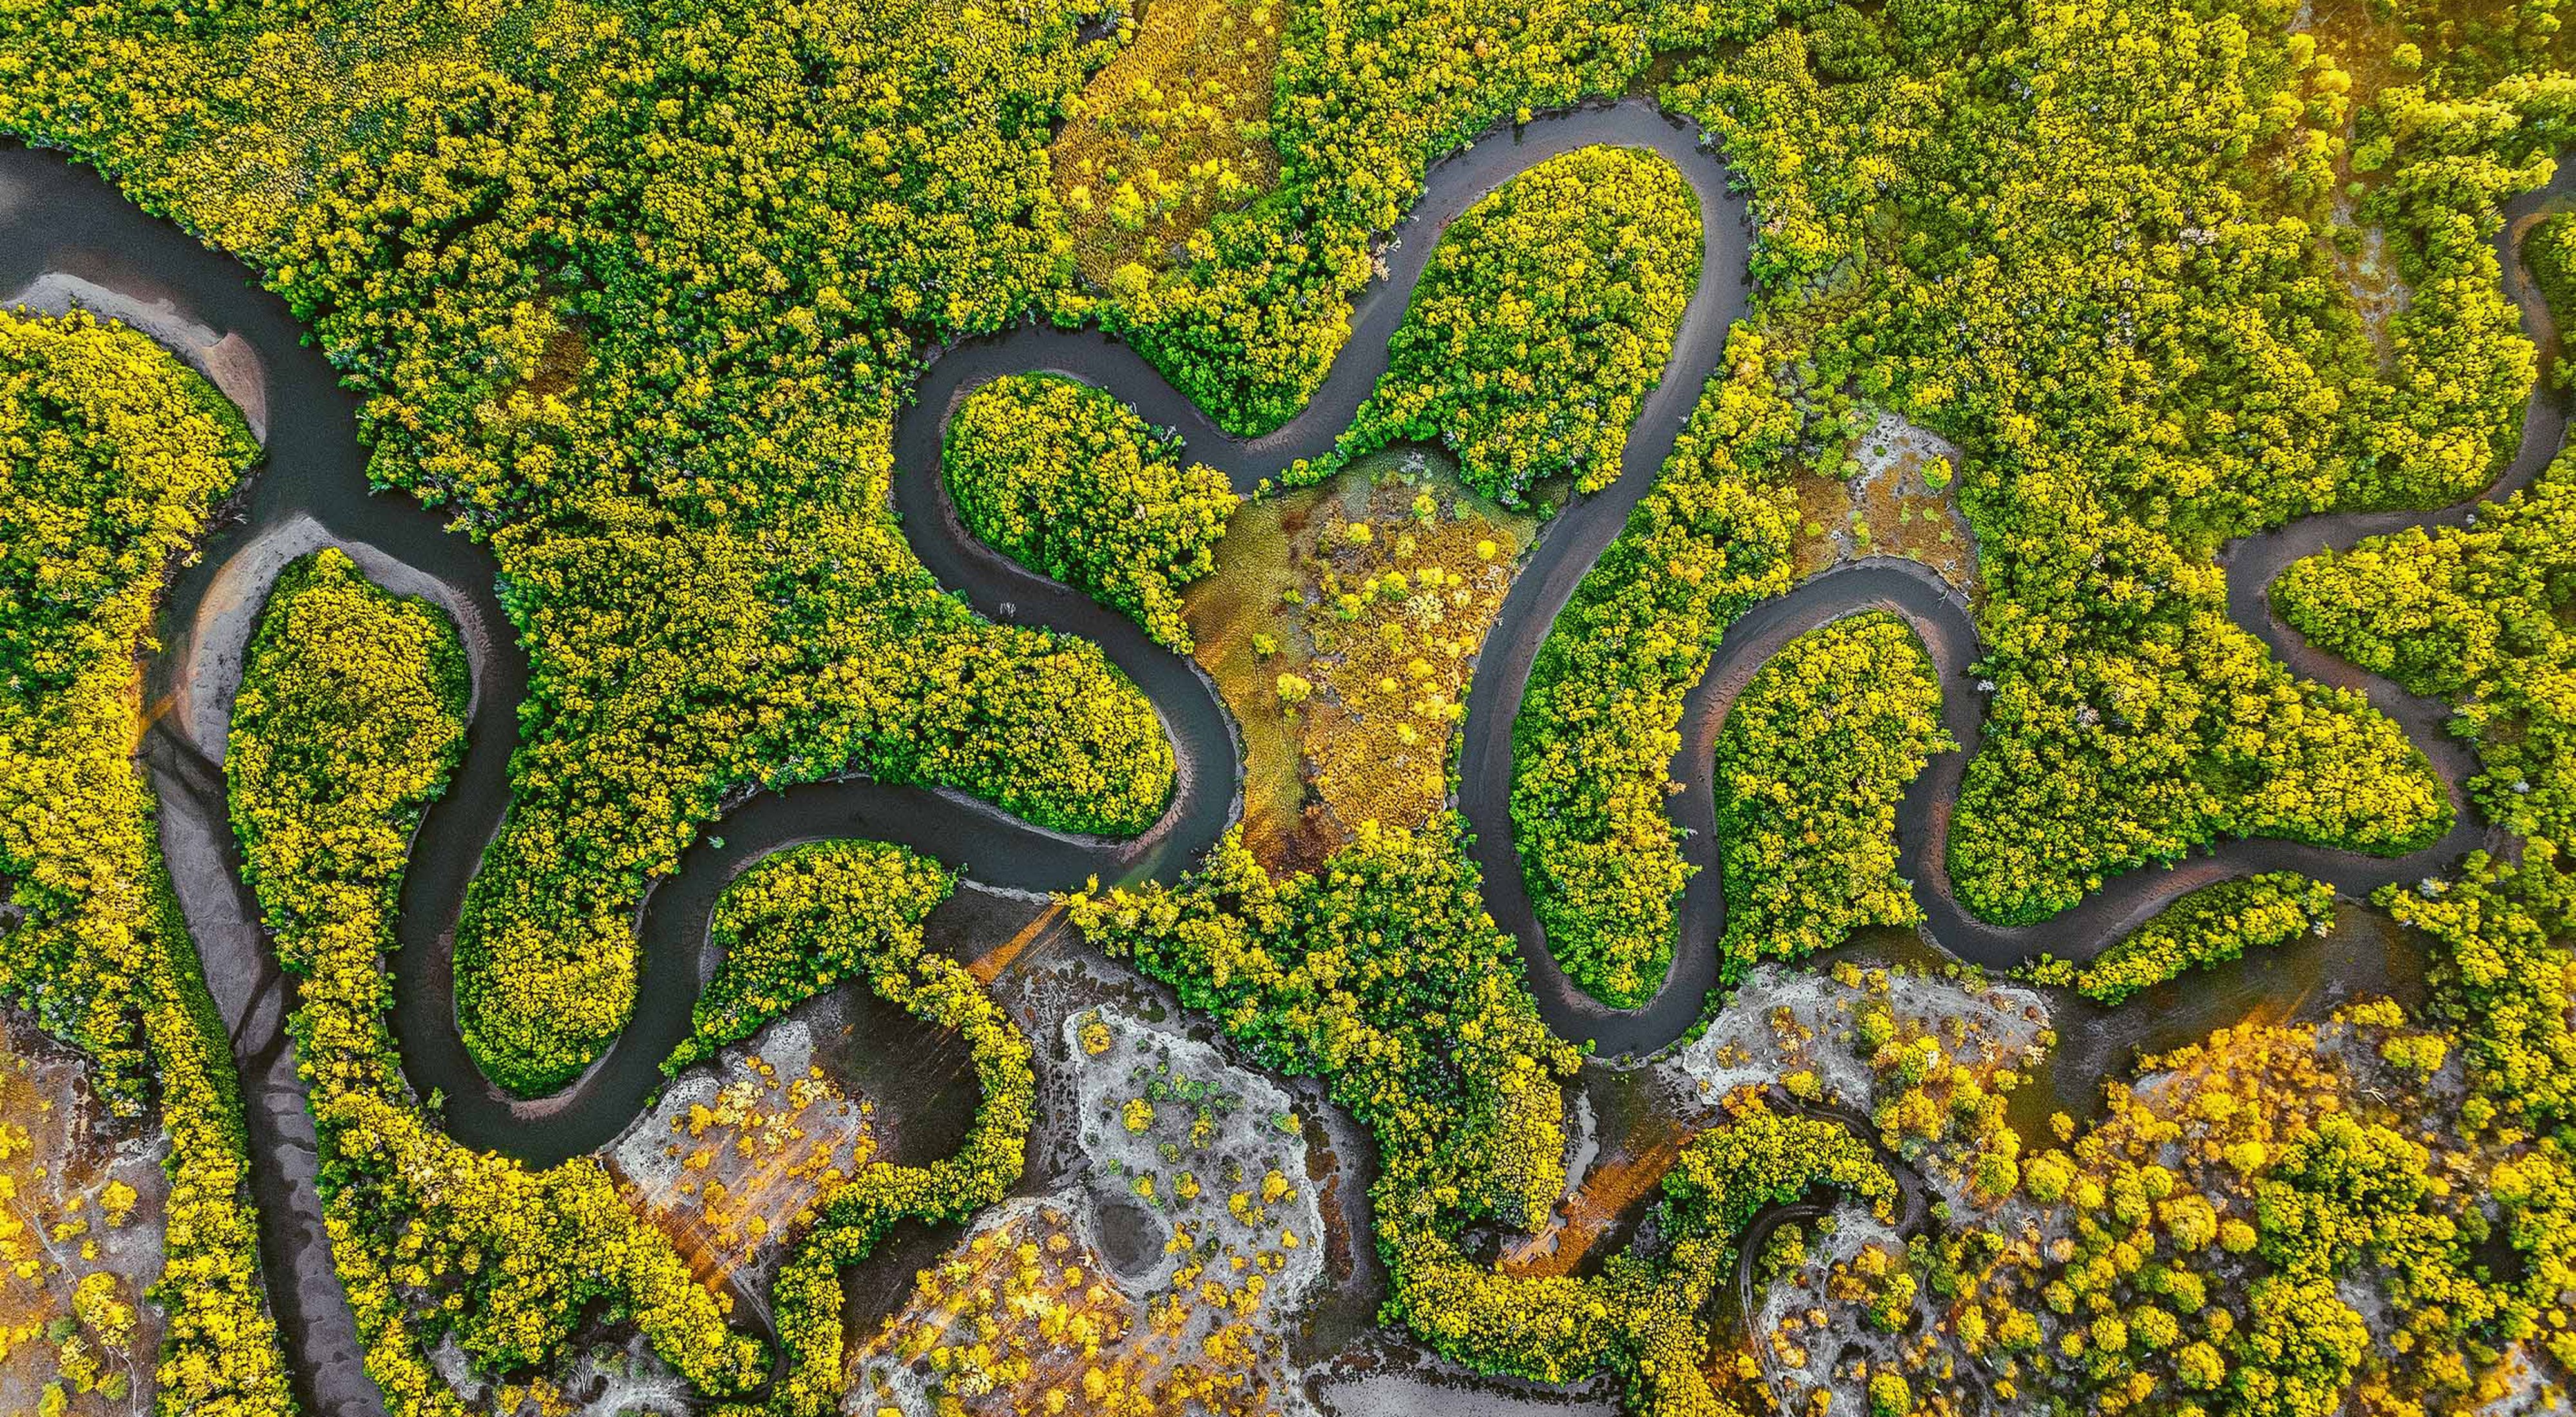 澳大利亚昆士兰的鳄鱼溪附近，一道曲水在红树林间流淌。